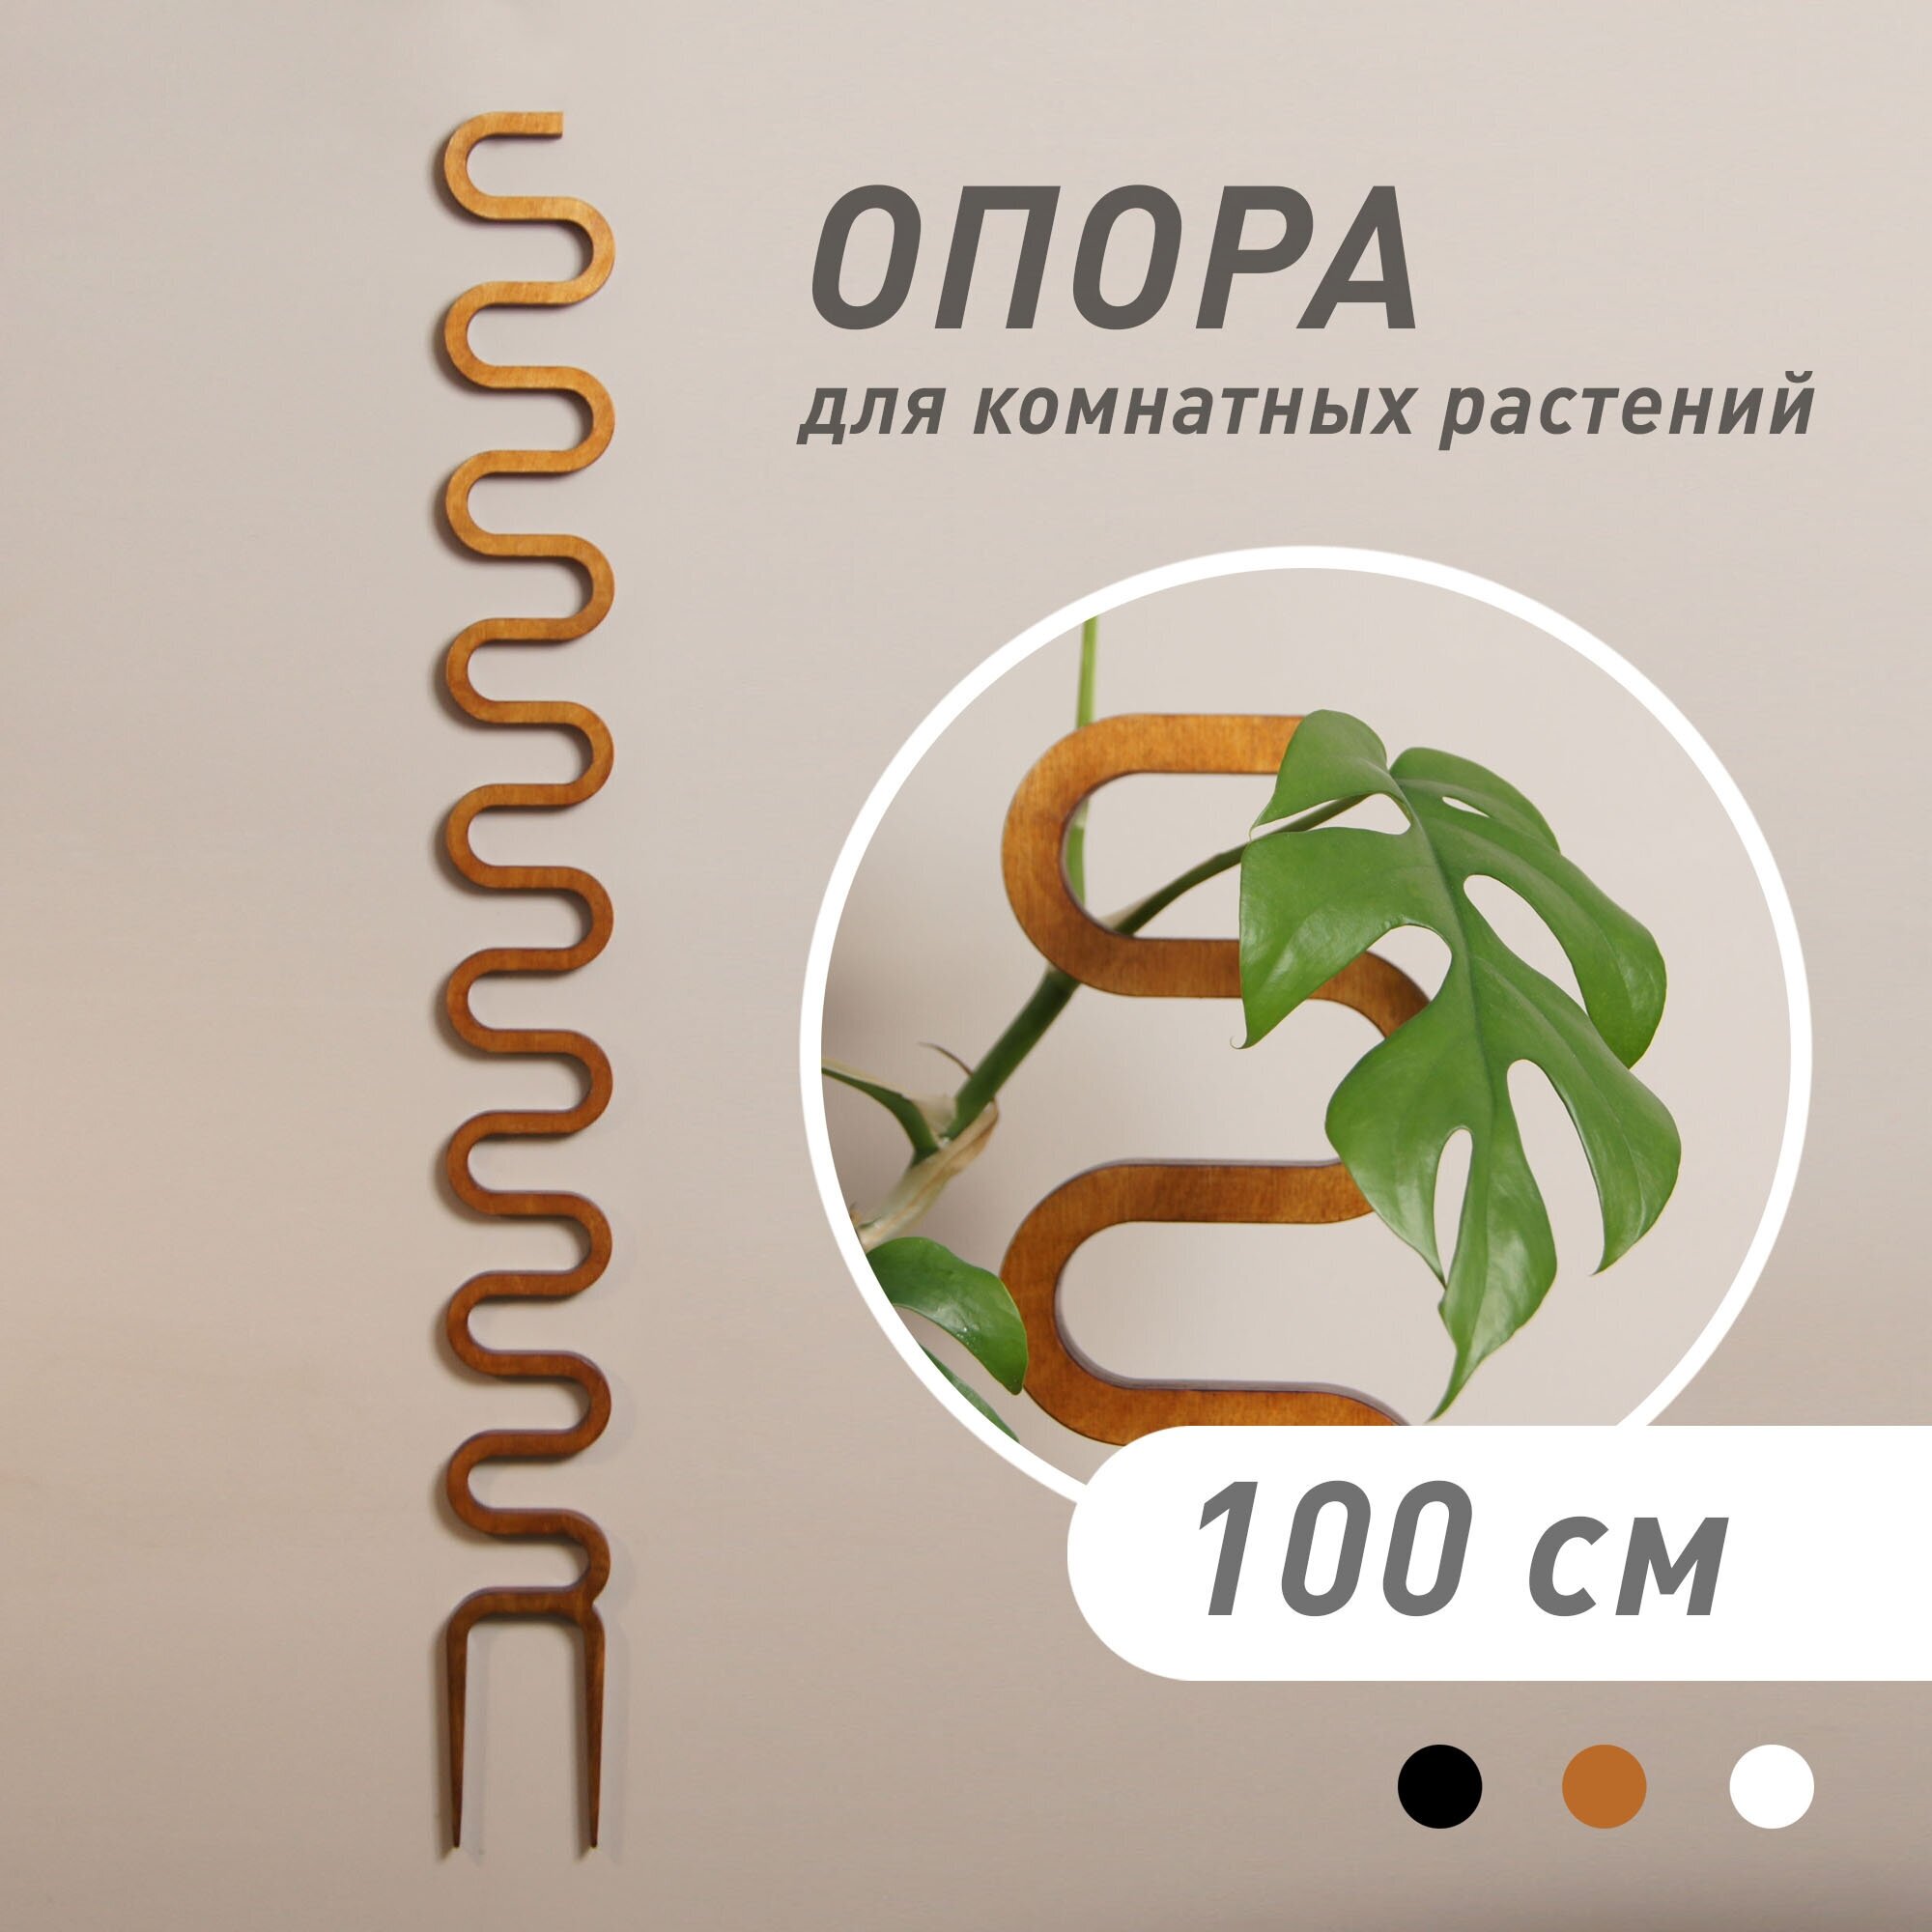 Опора для домашних растений "COBRA", светло-коричневая, высота 100 см - фотография № 1